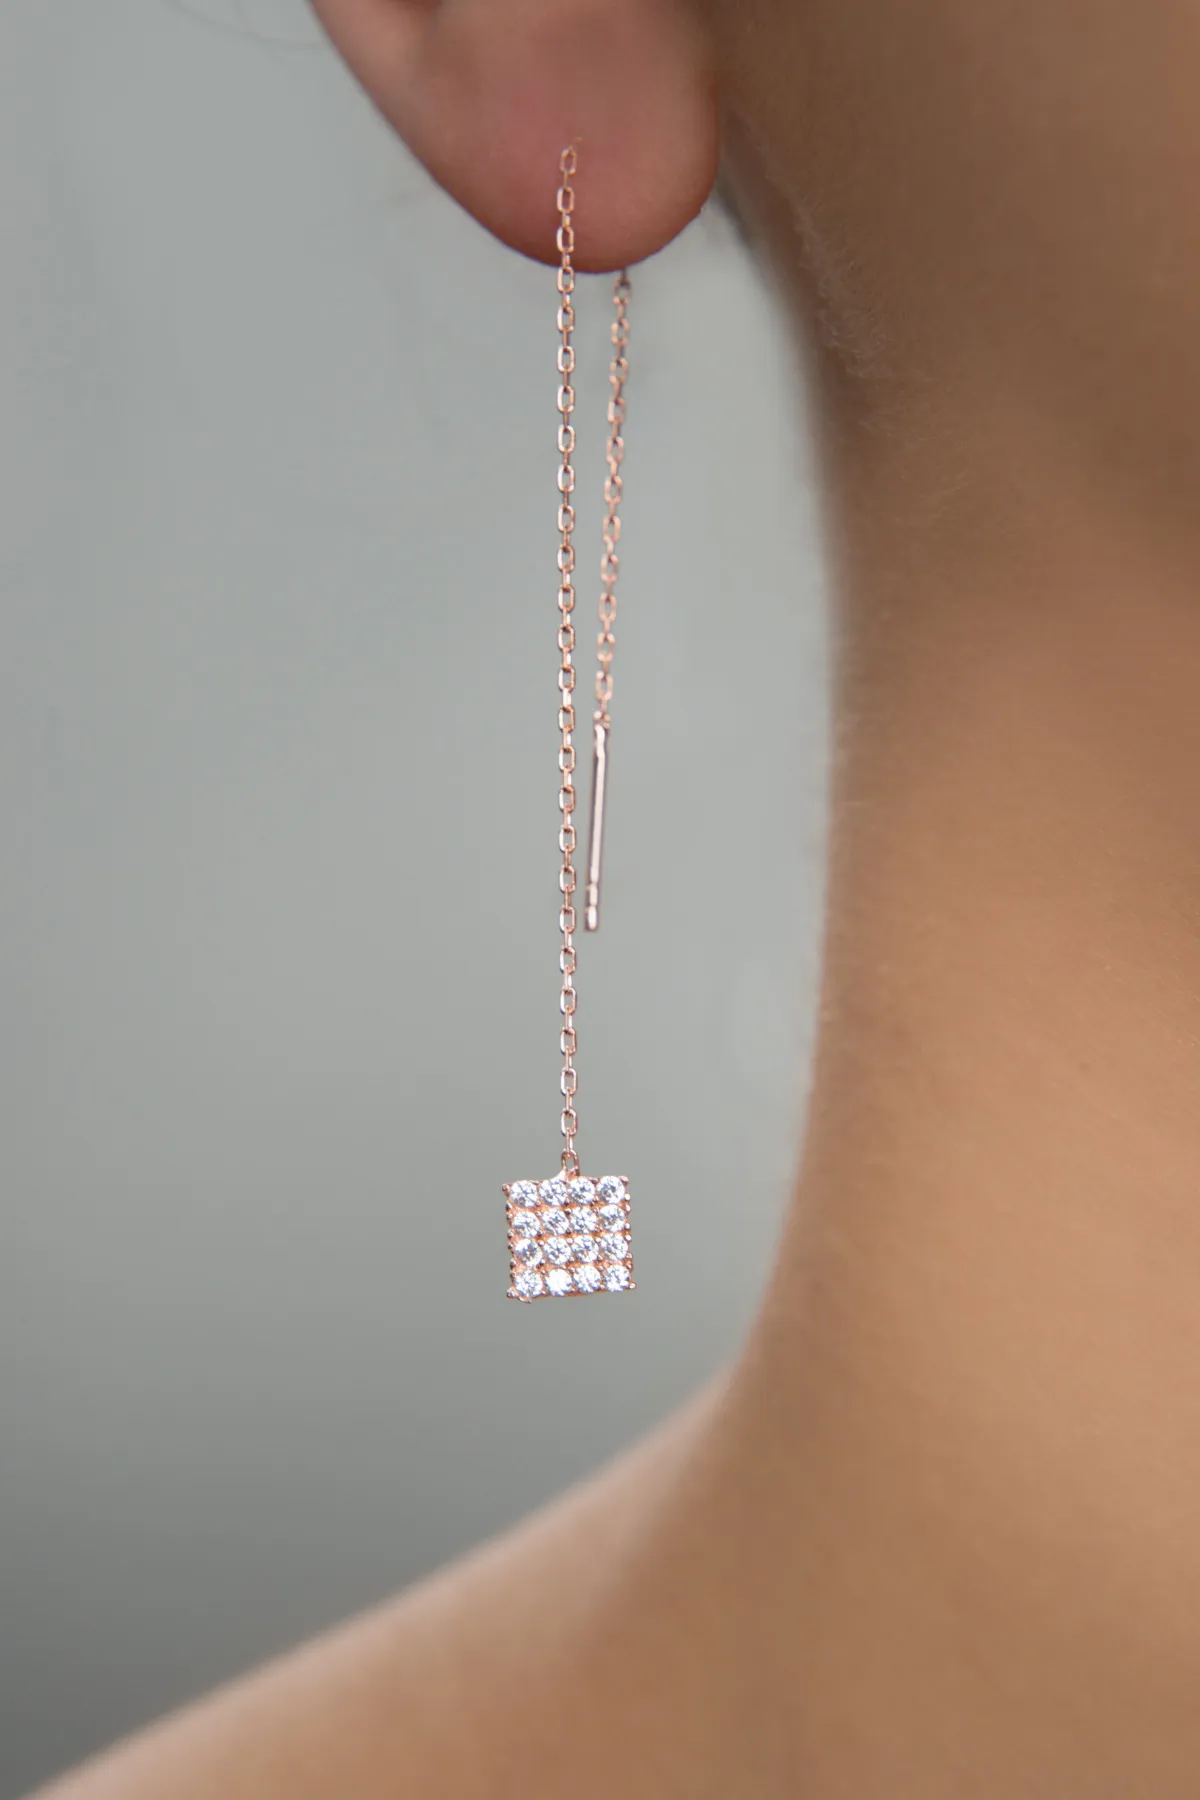 Висячие серебряные серьги с розовым покрытием 925 с квадратной деталью ekr2013 larin silver#1